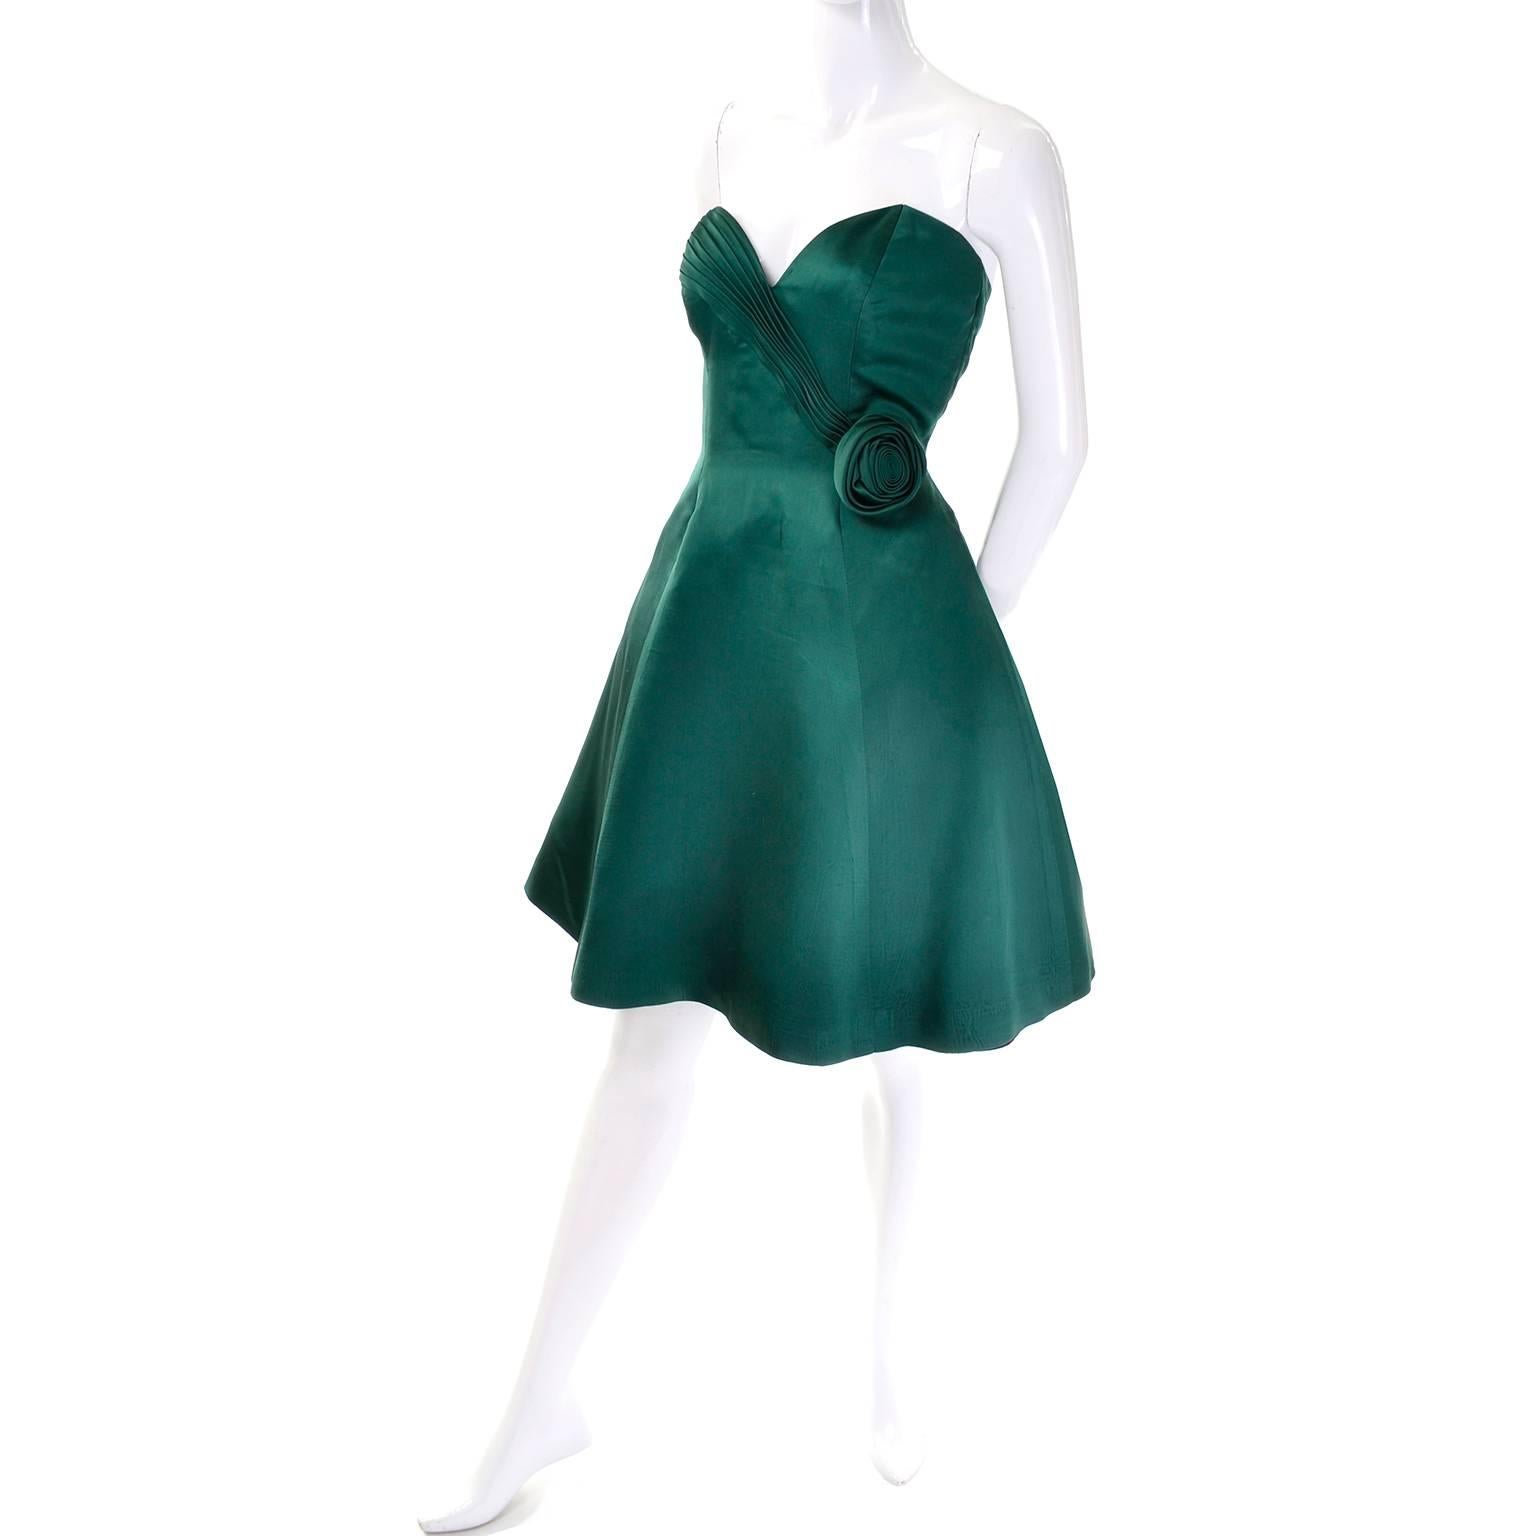 Cette robe de soirée verte vintage a été conçue par Vicky Tiel et achetée chez Bergdorf Goodman dans les années 1980.  La robe est sans bretelles et possède un joli corsage plissé en forme de cœur, un 